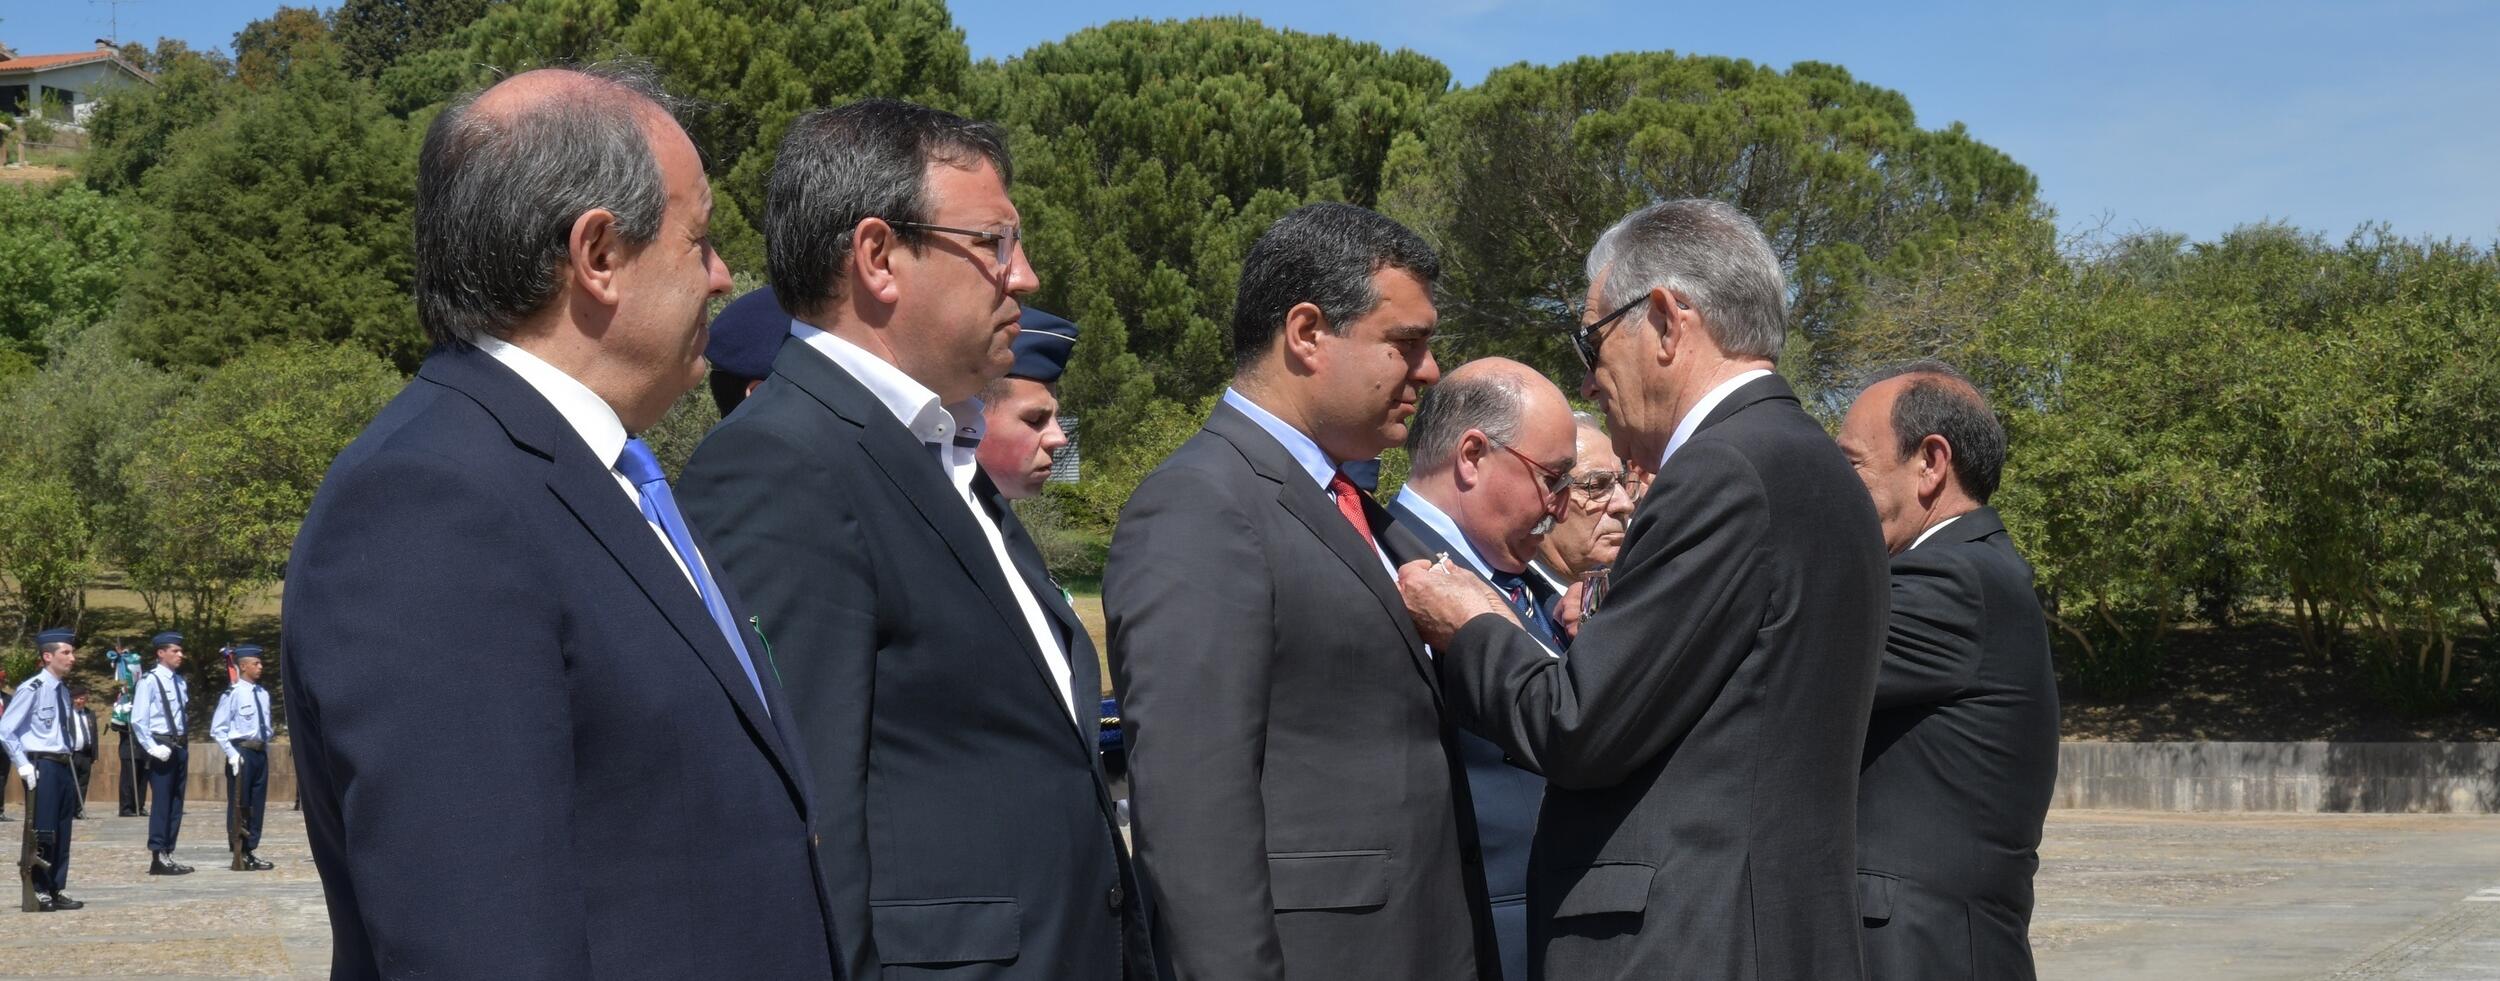 Presidente da Câmara Municipal do Montijo condecorado pela Liga Portuguesa dos Combatentes